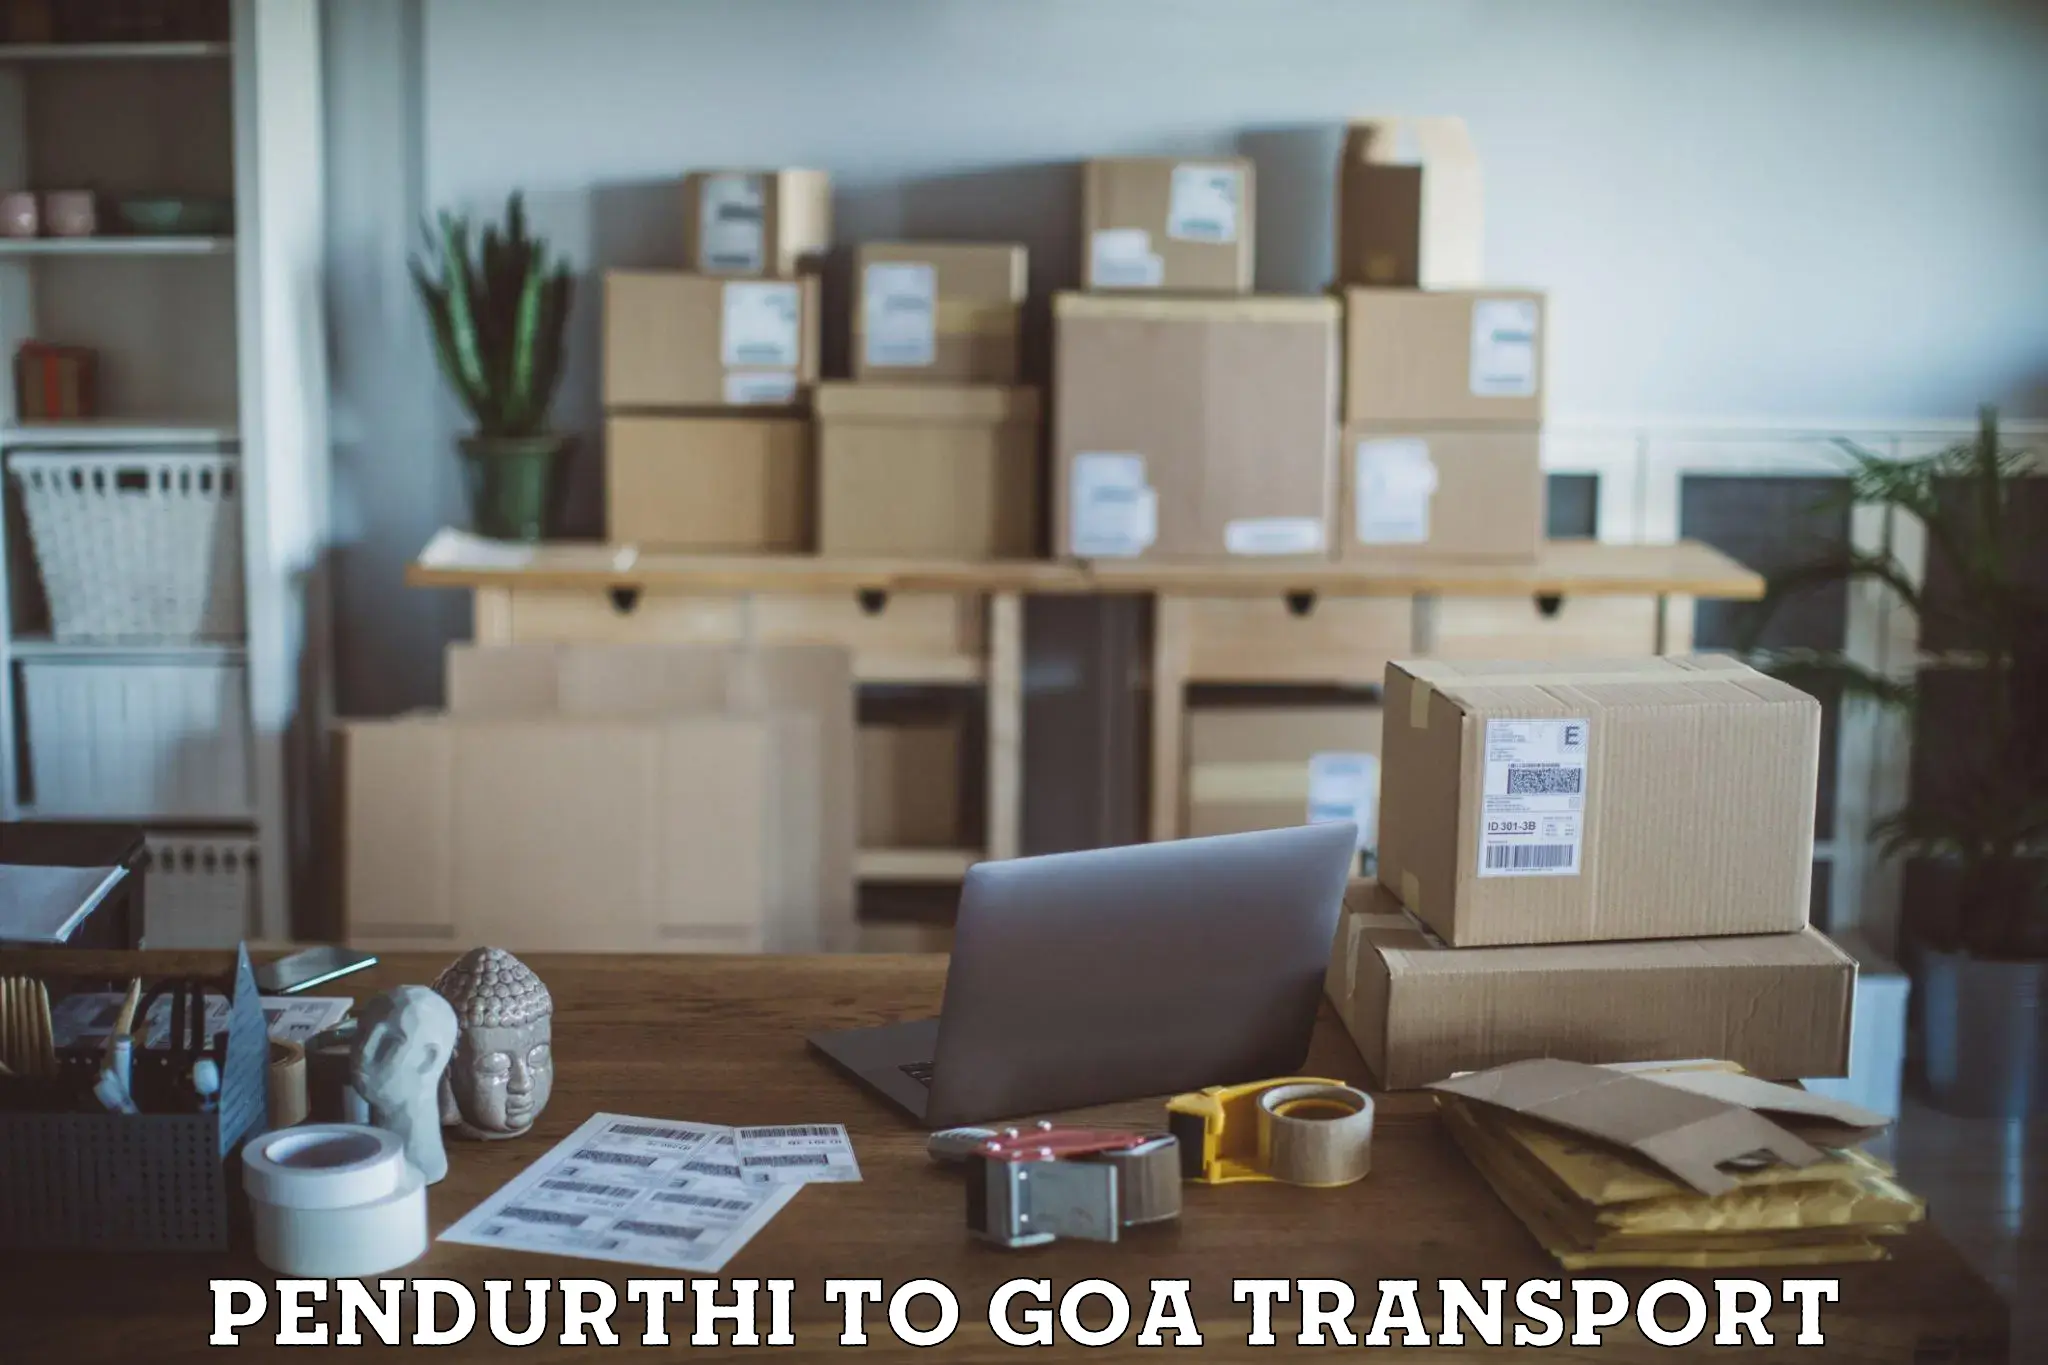 Transportation services Pendurthi to IIT Goa